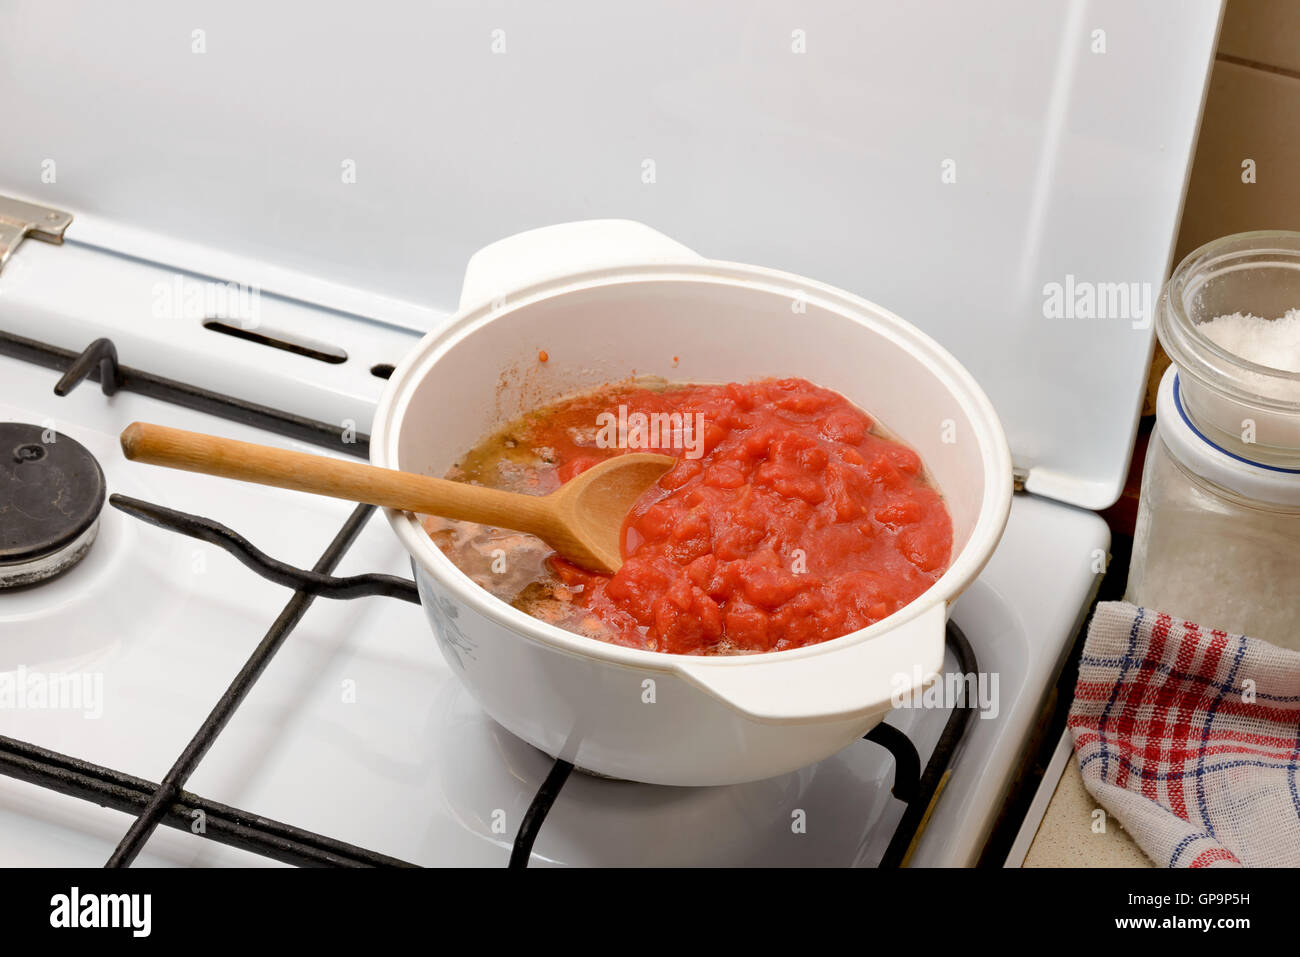 Küche die Bolognese-Sauce, genannt auch Ragu, in der Küche zu Hause. Zwiebel, Tomate und Fleisch in den Topf mit einem Holzlöffel. Stockfoto